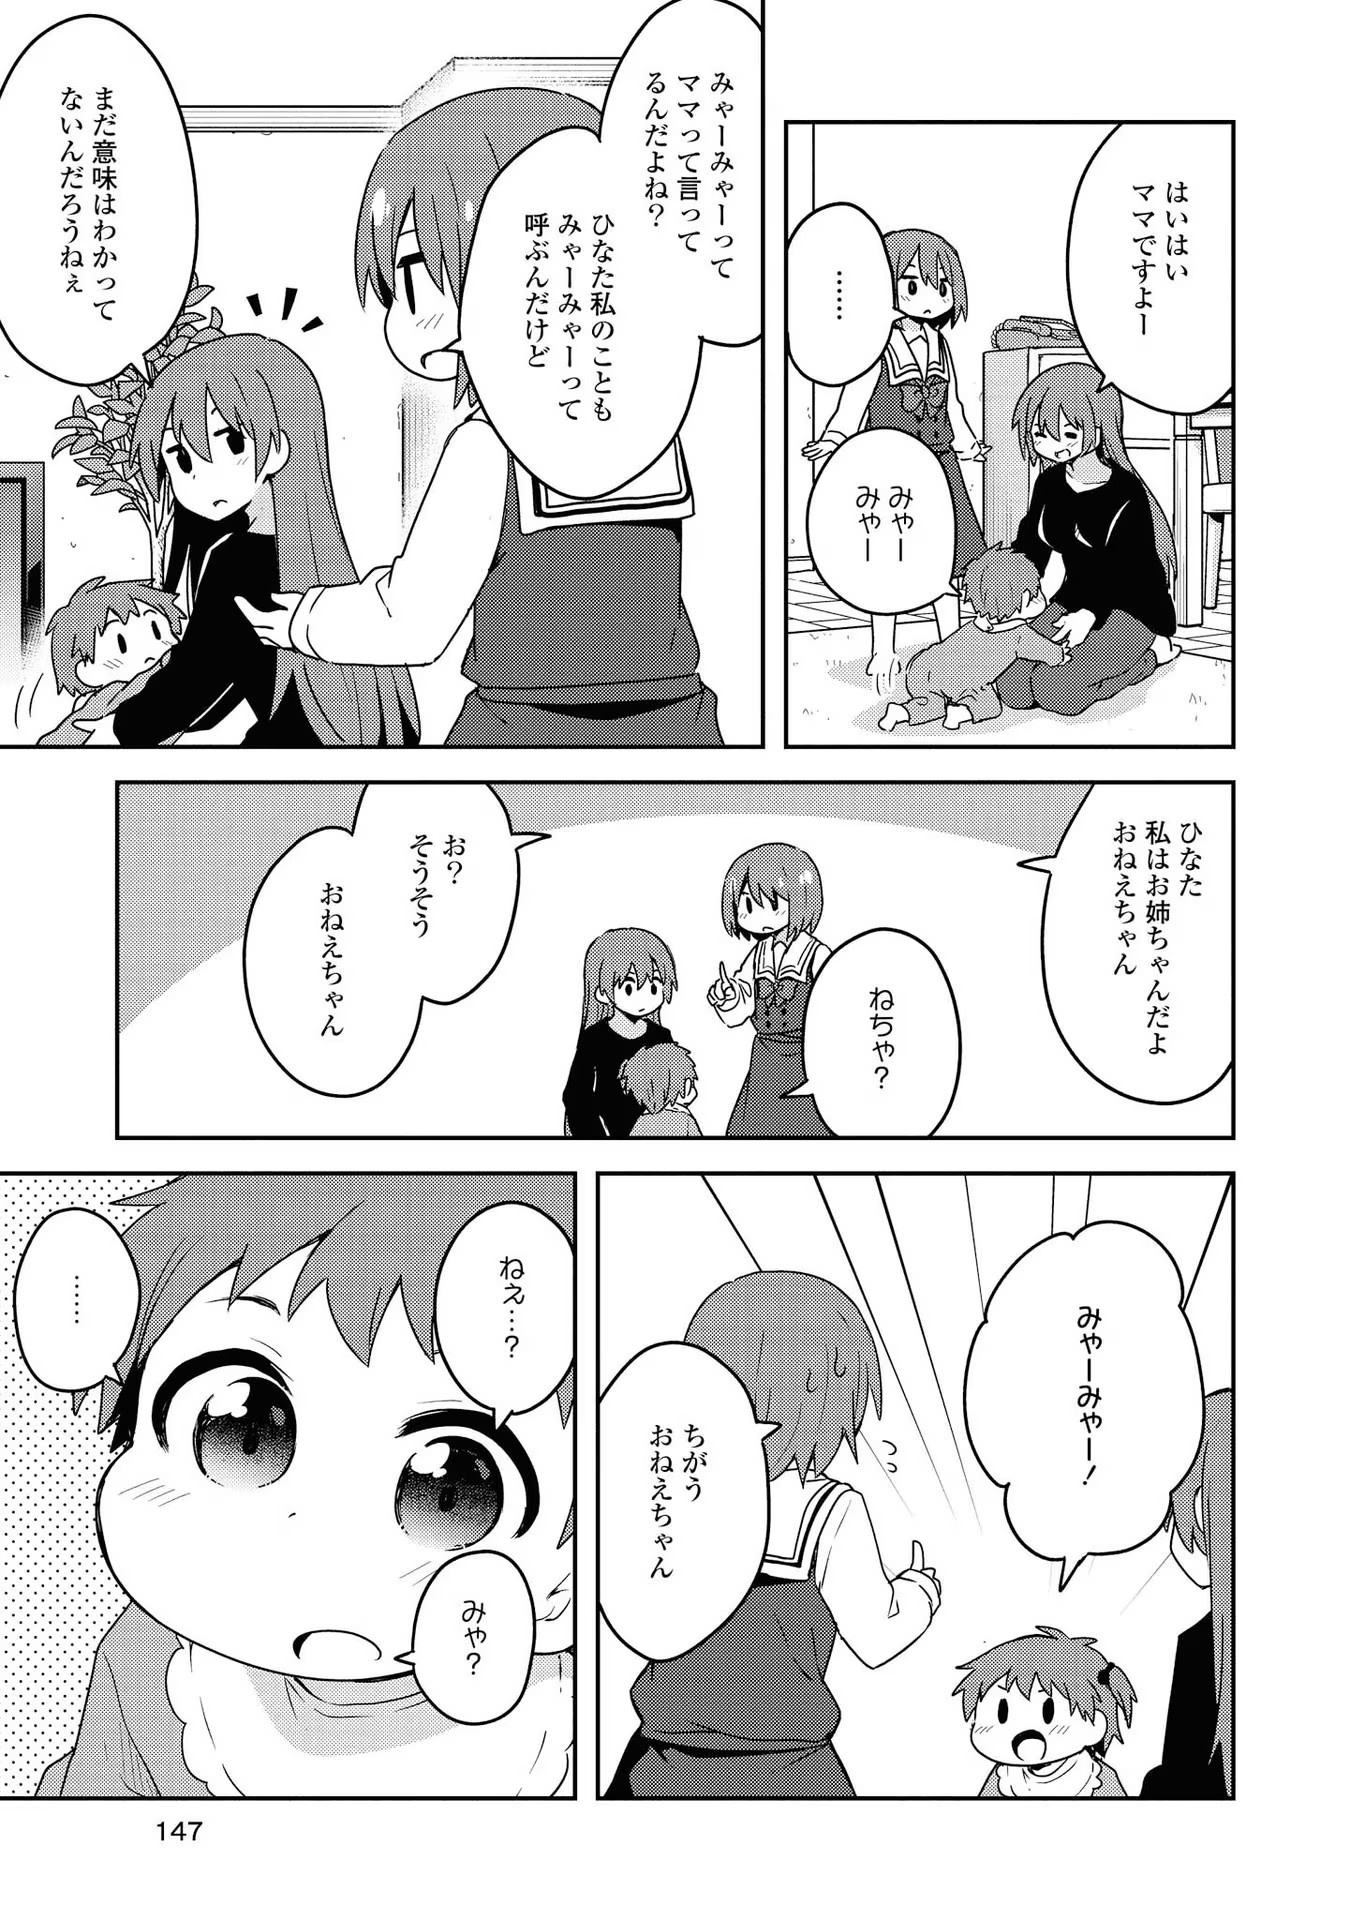 Watashi ni Tenshi ga Maiorita! - Chapter 60.5 - Page 2